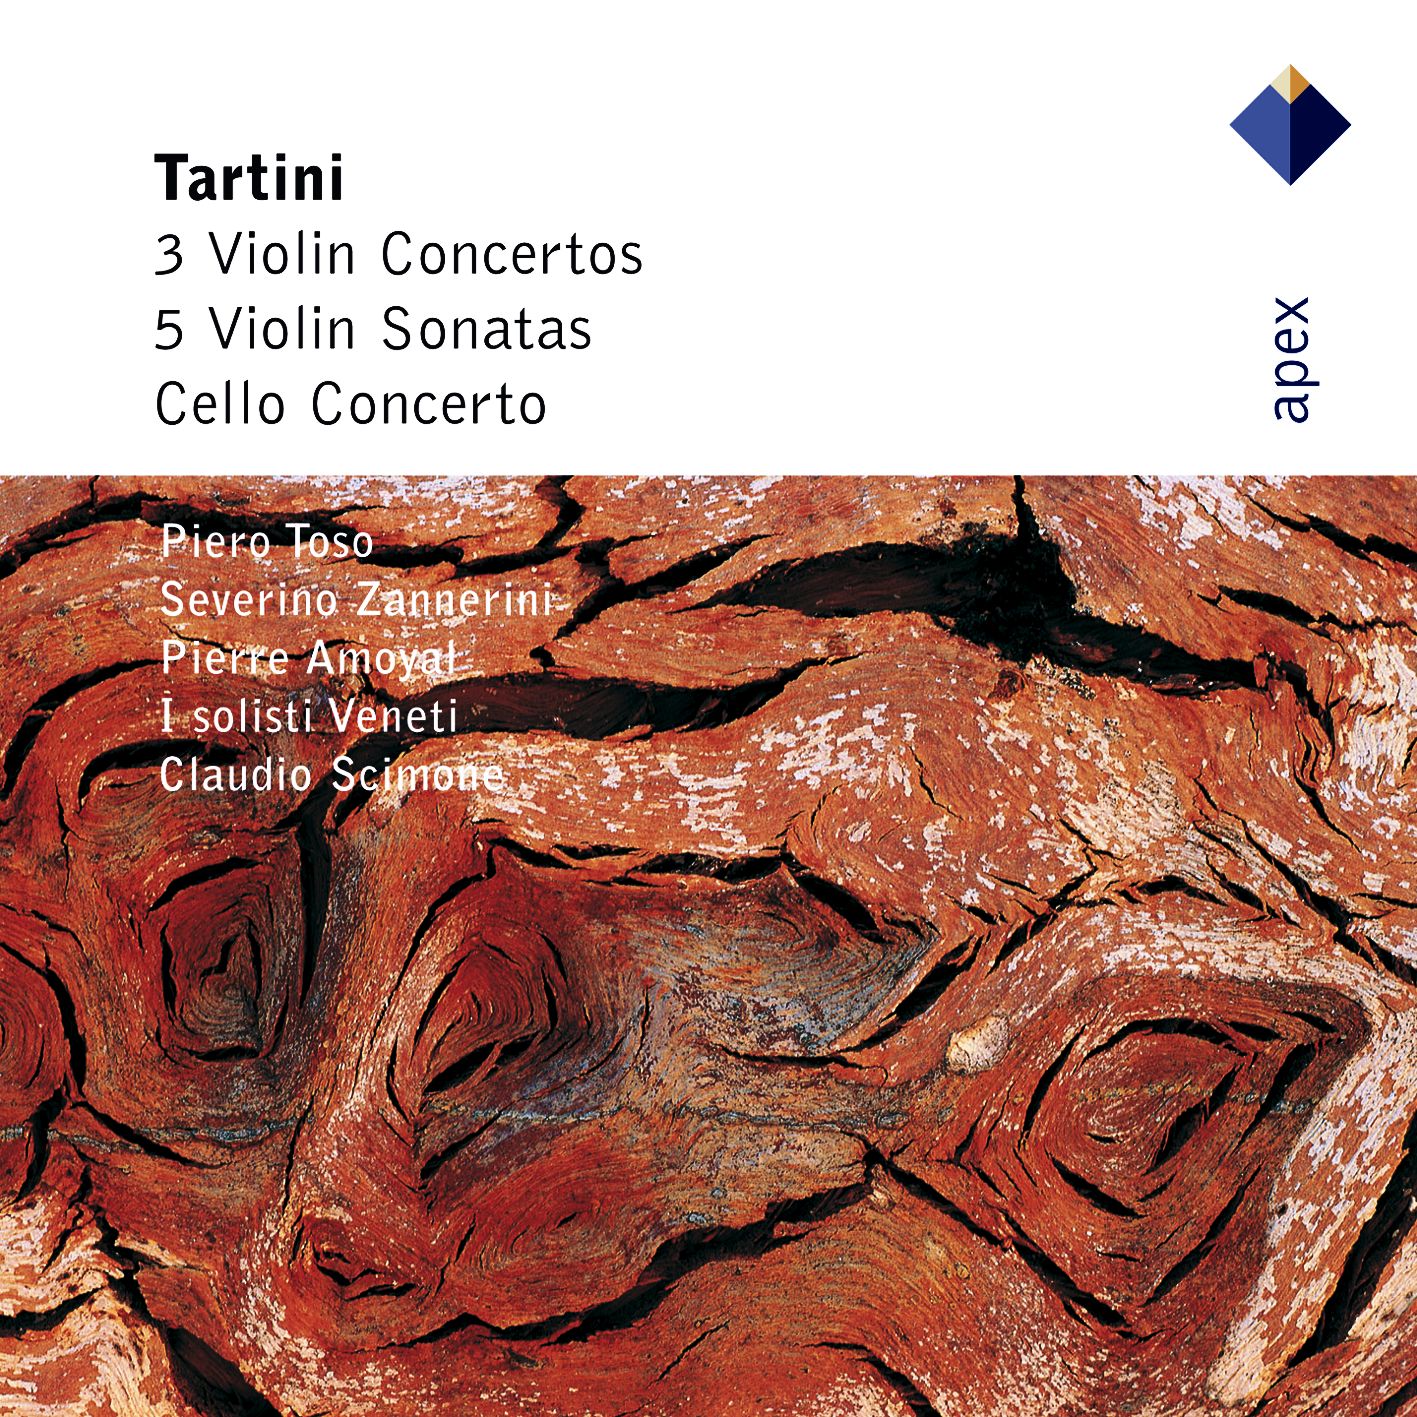 Tartini : Violin Concertos, Violin Sonatas & Cello Concerto - Apex